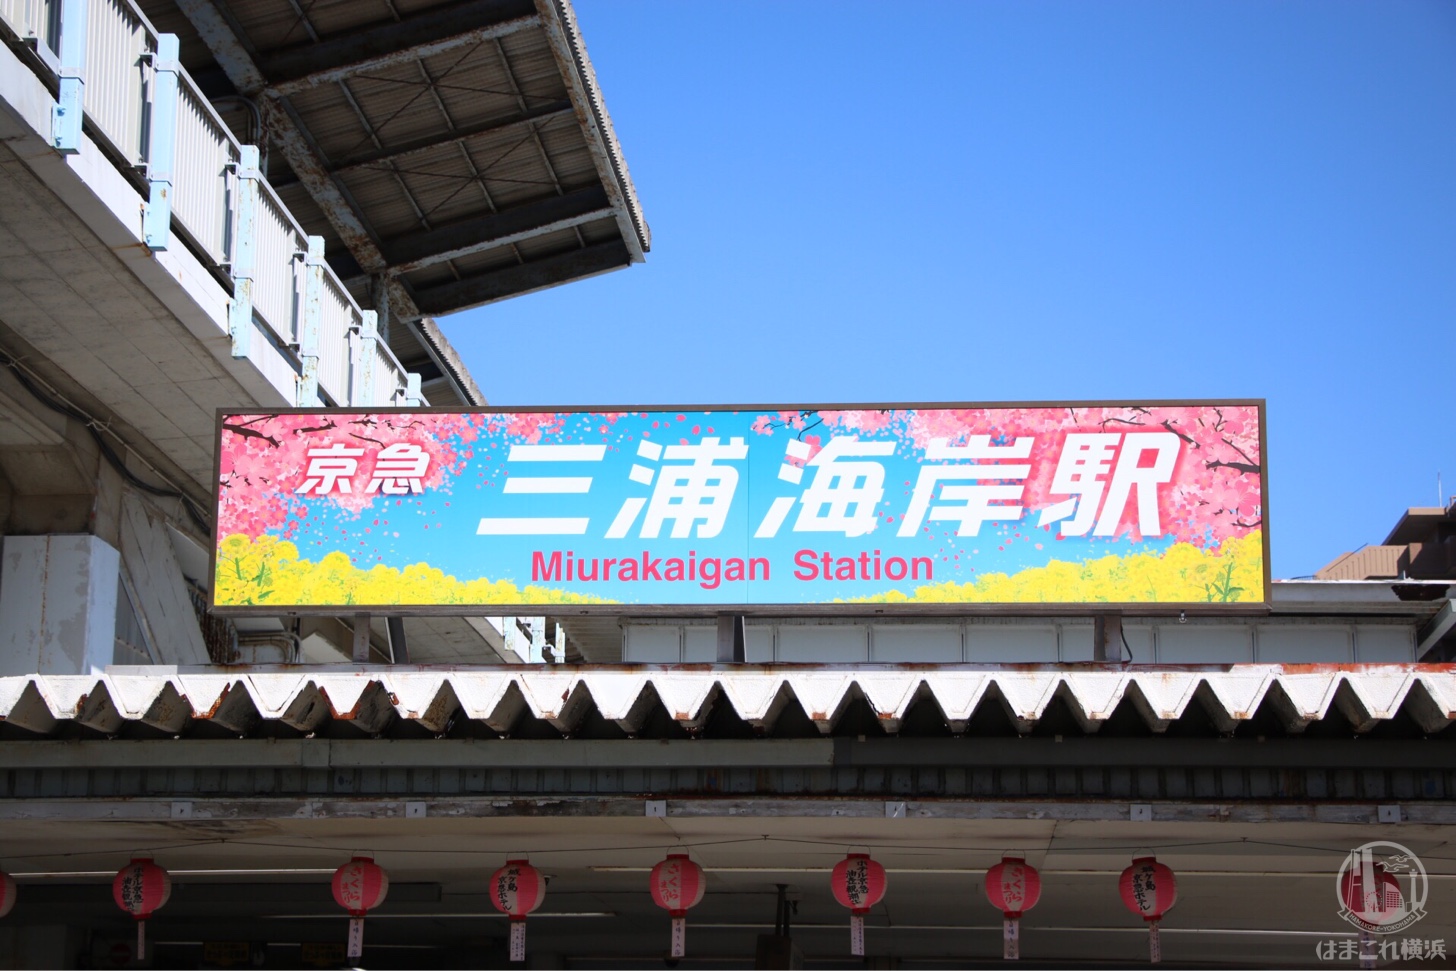 三浦海岸駅 桜仕様の標識